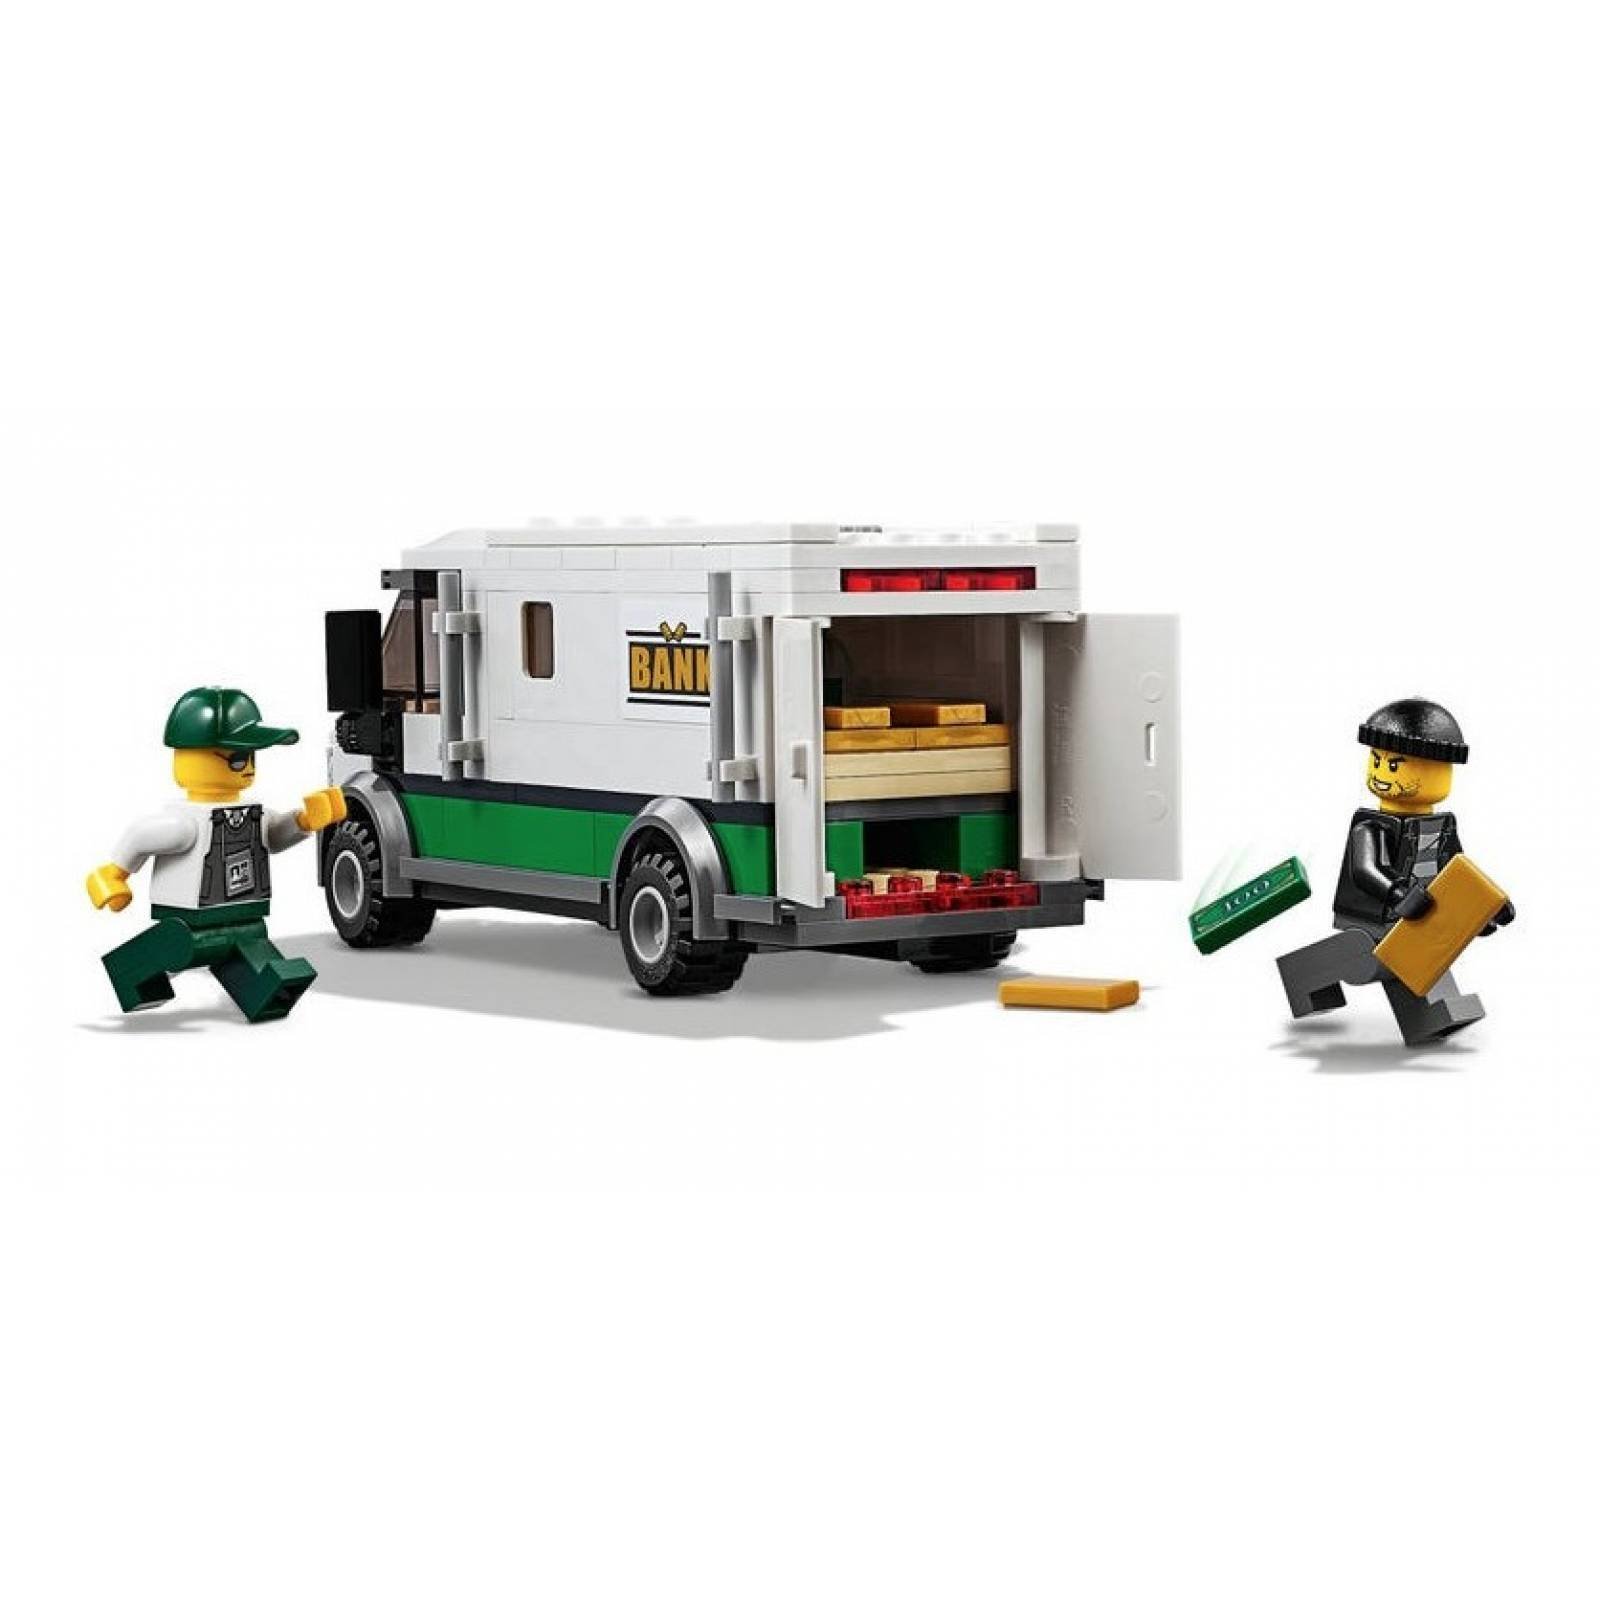 Lego 60198 Tren De Mercancías